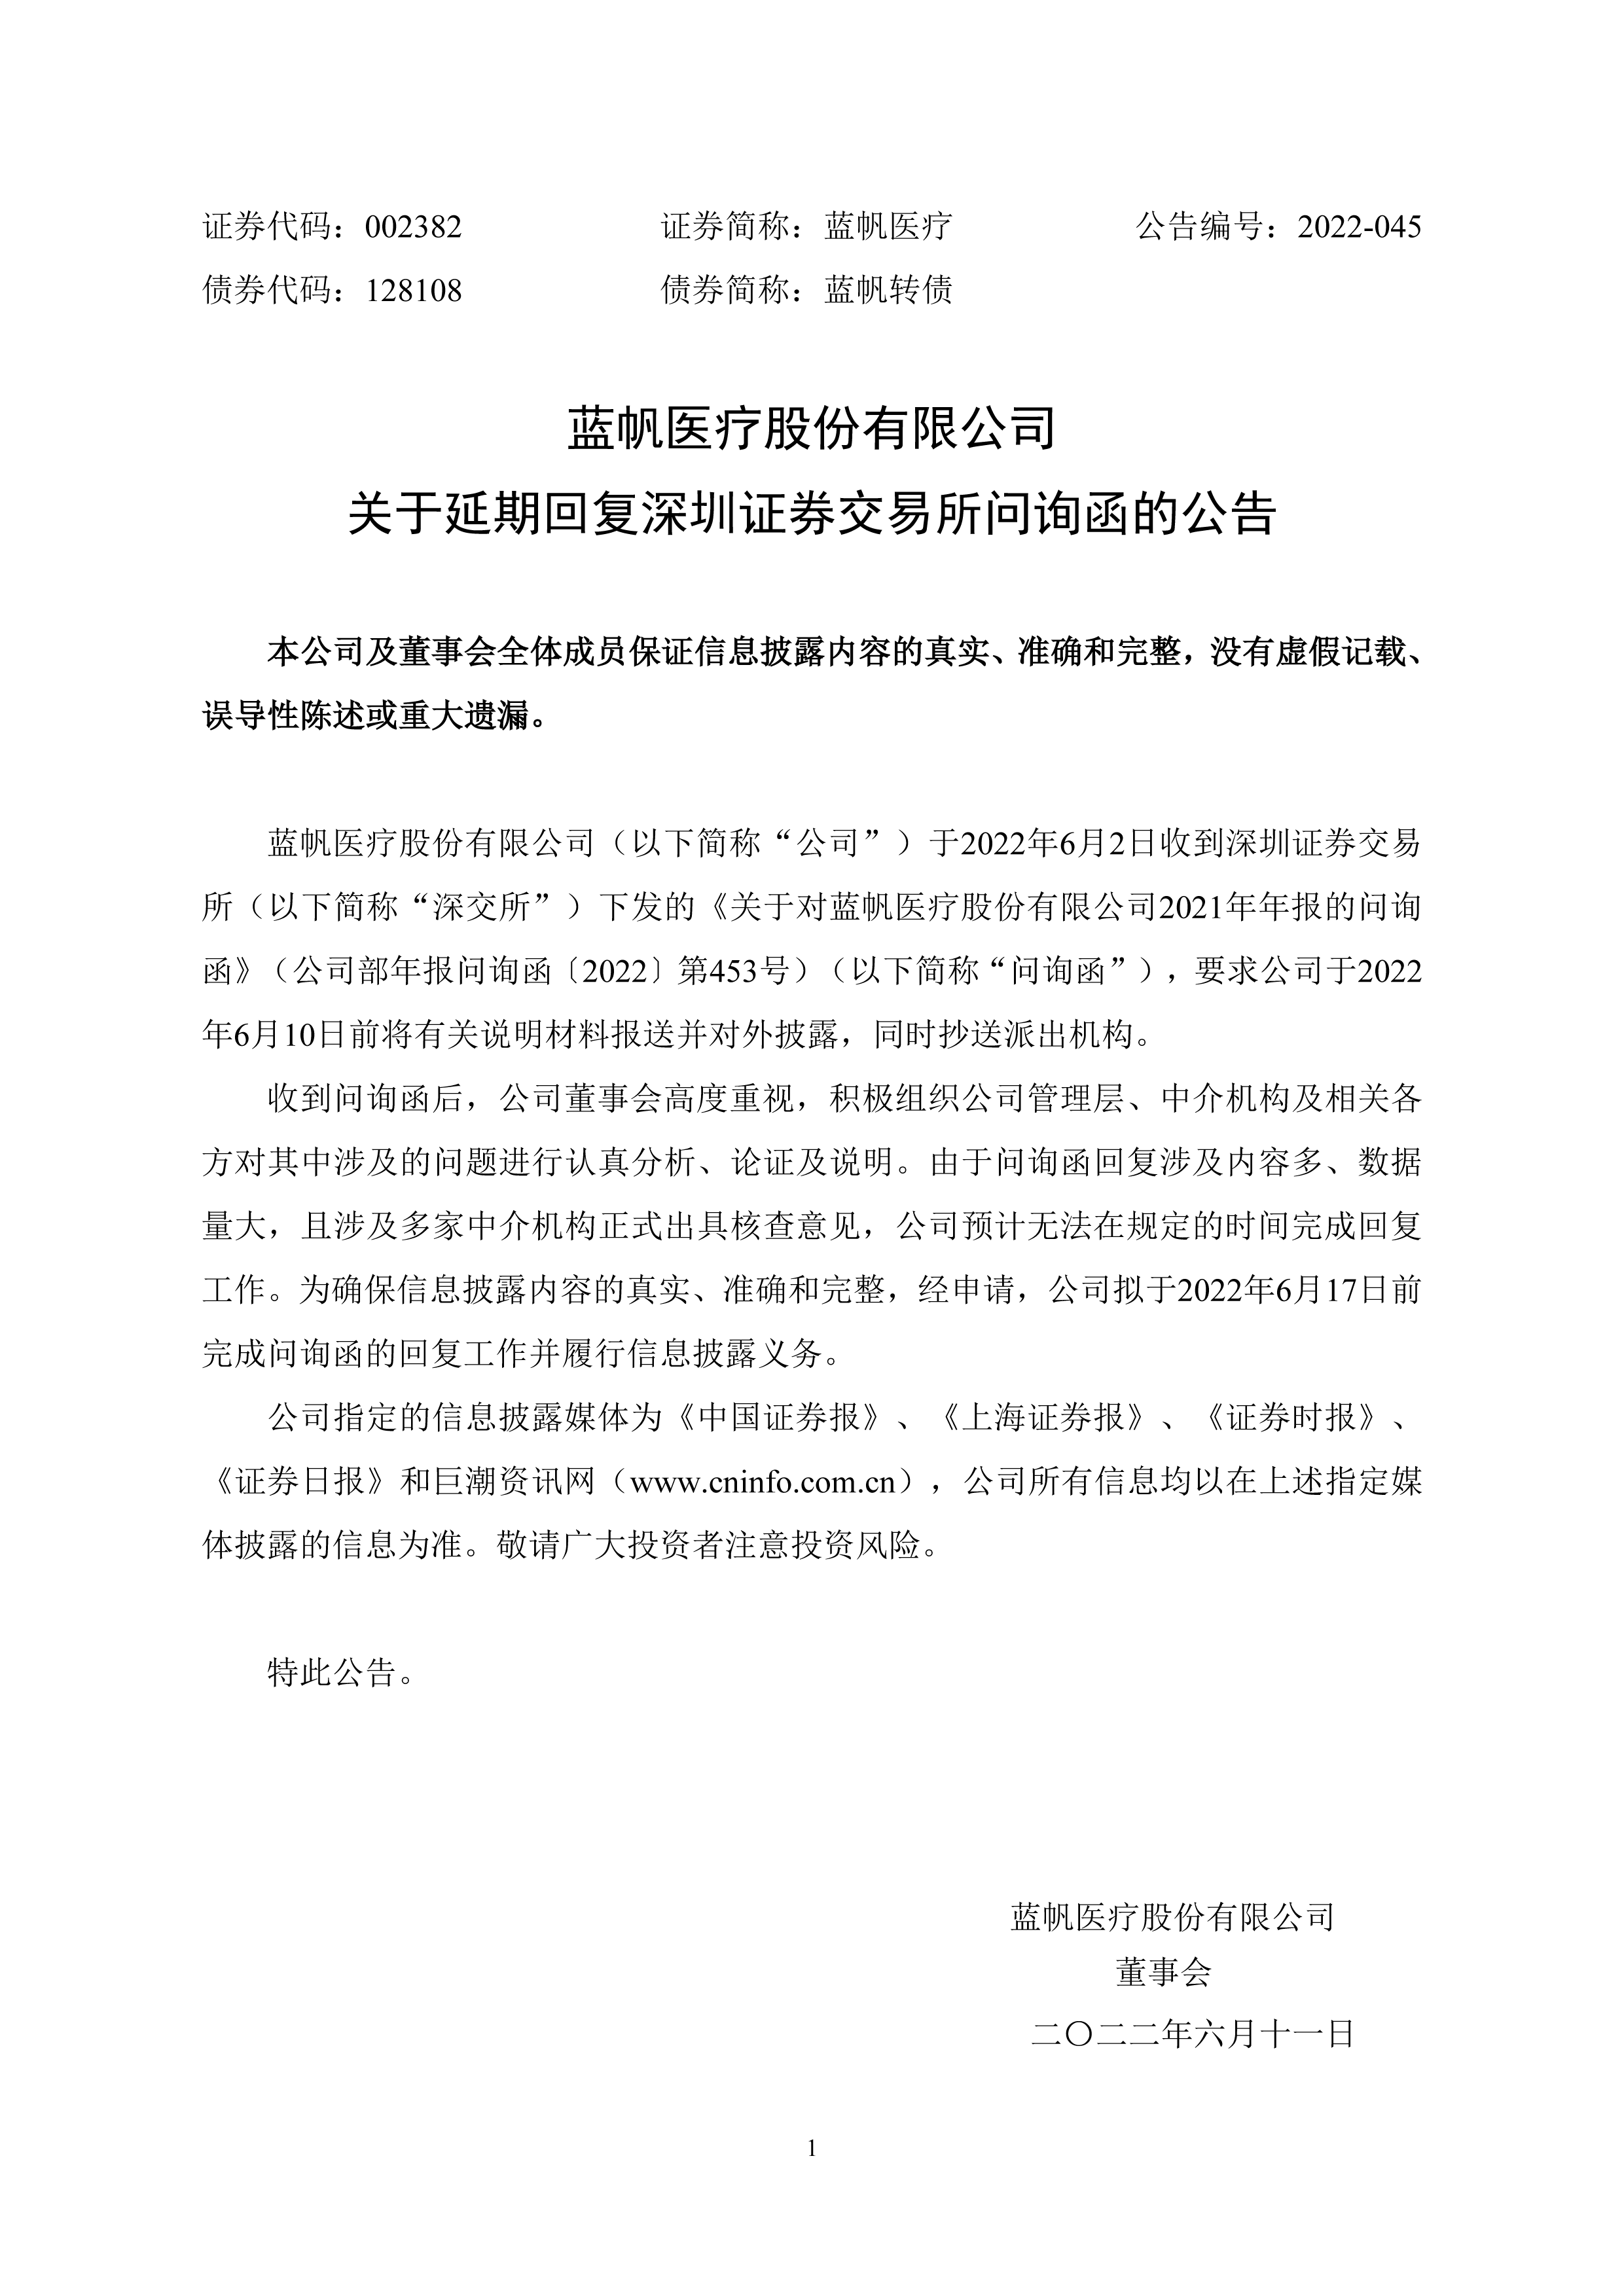 2022-045 关于延期回复深圳证券交易所问询函的公告-01.png